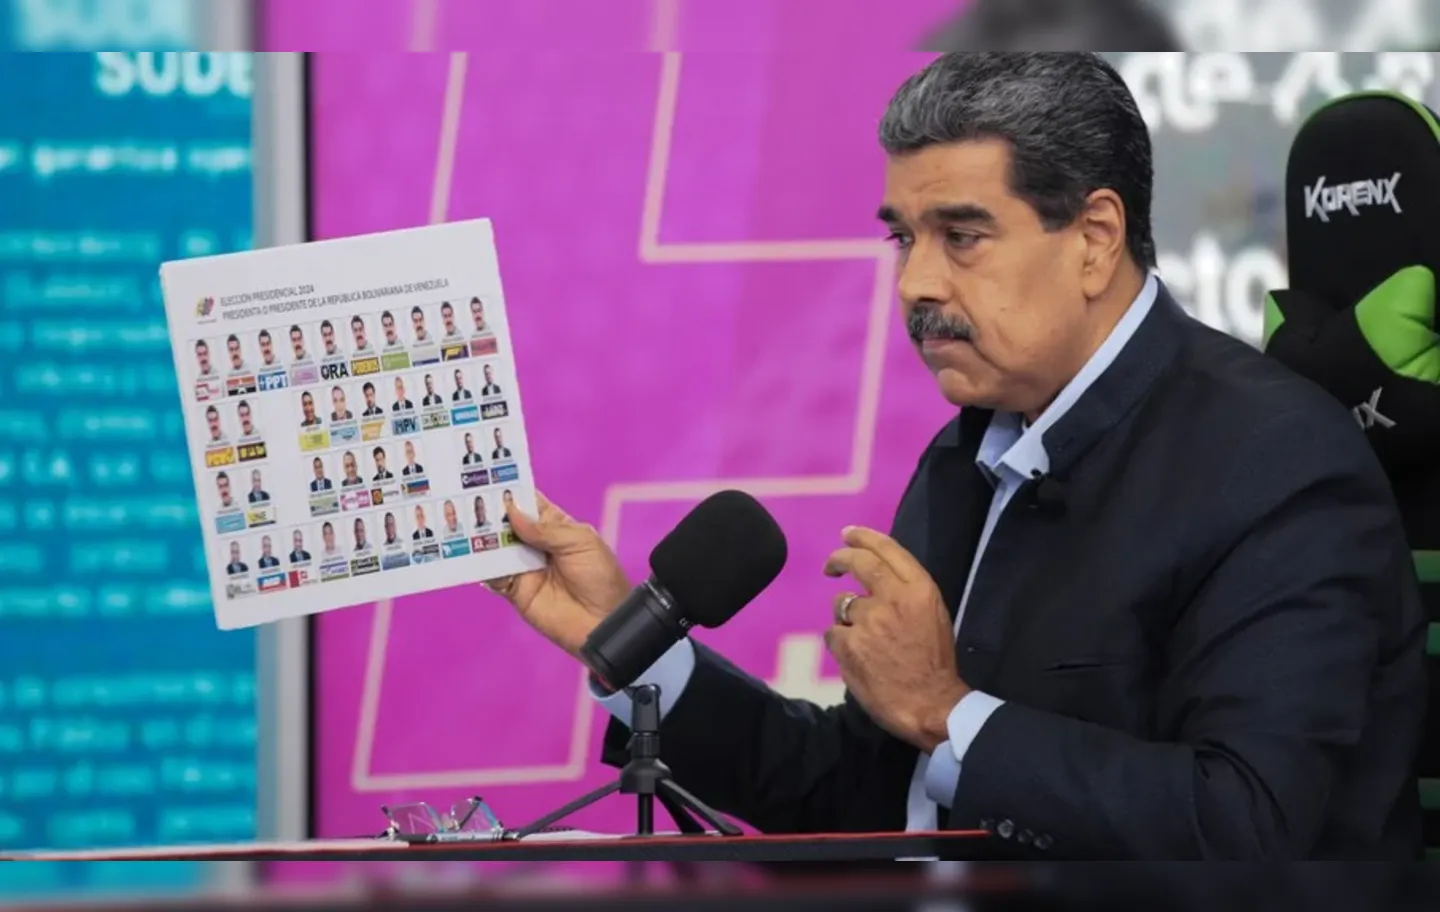 Nicolás Maduro tenta um terceiro mandato como presidente da Venezuela